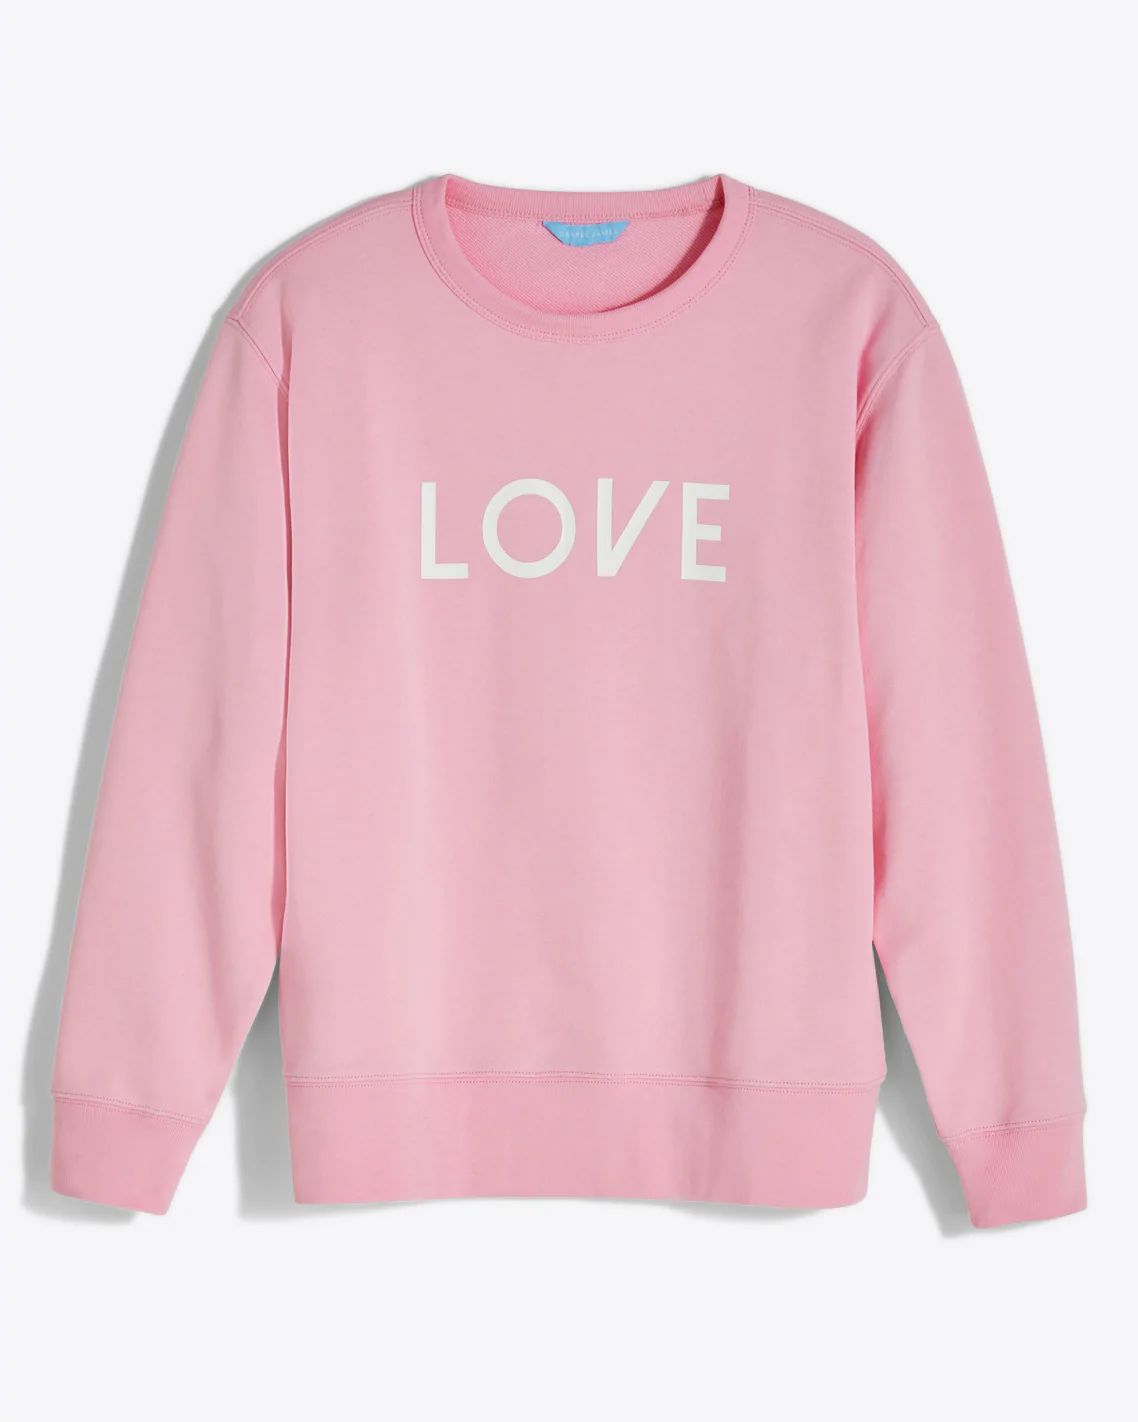 Love Drop Shoulder Sweatshirt in Light Pink | Draper James (US)